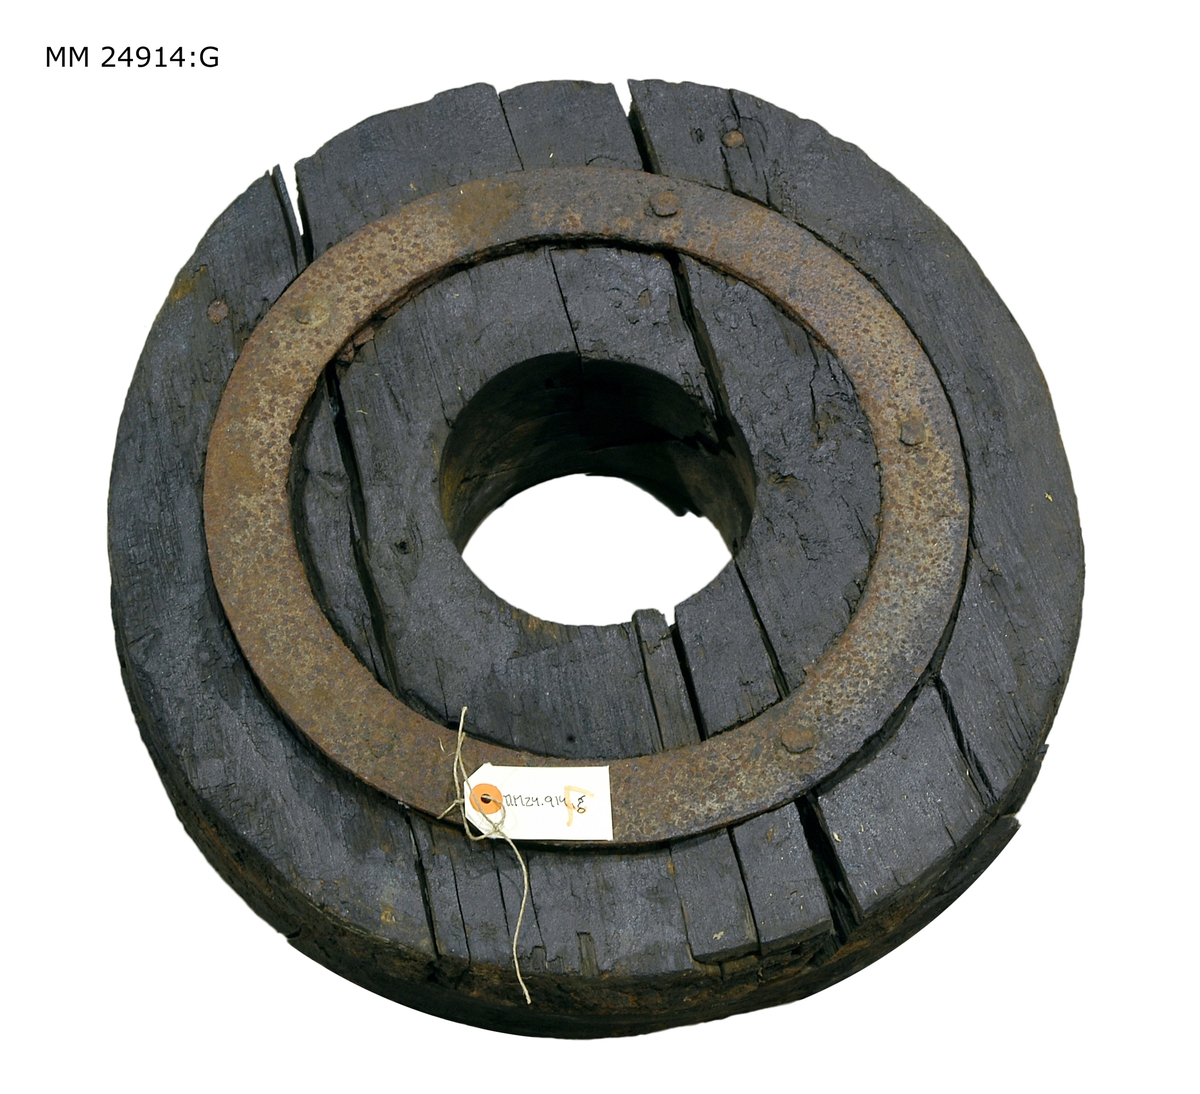 Svart hjul som består av flera hopsatta delar som hålls samman av en järnring. Hål i mitten för hjulaxeln.